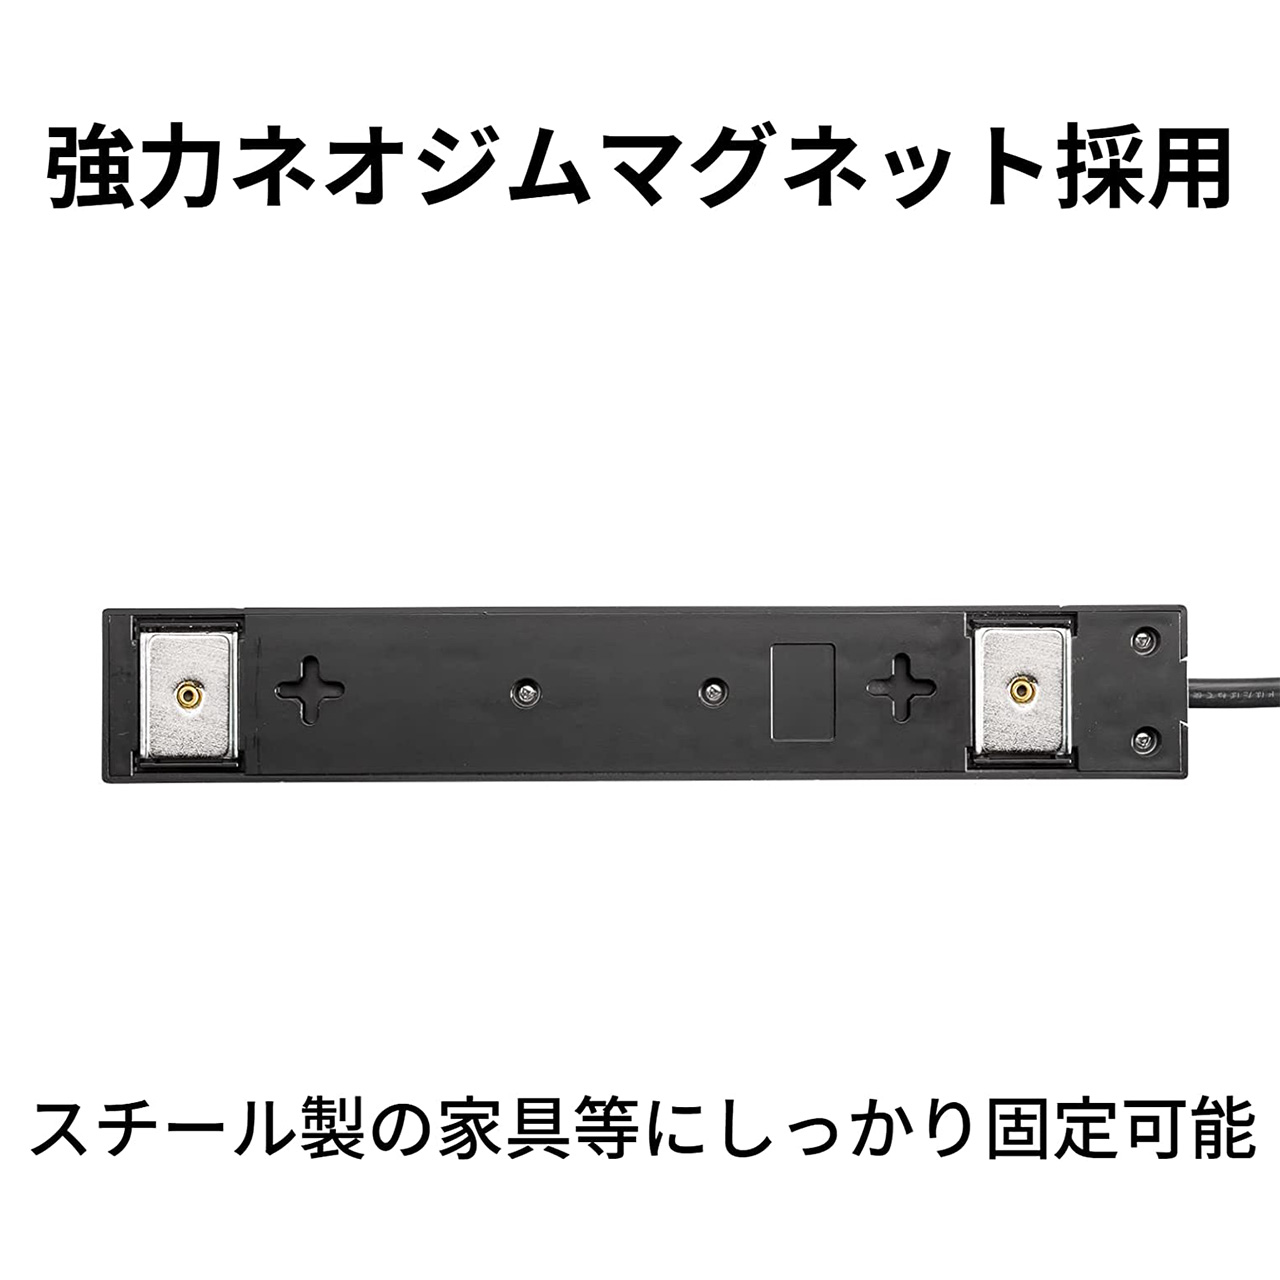 新入荷 電源タップ 4個口 3m 延長コード USB付き 充電 コンセント OAタップ コンセントタップ 節電タップ TAP-B107U-3W 